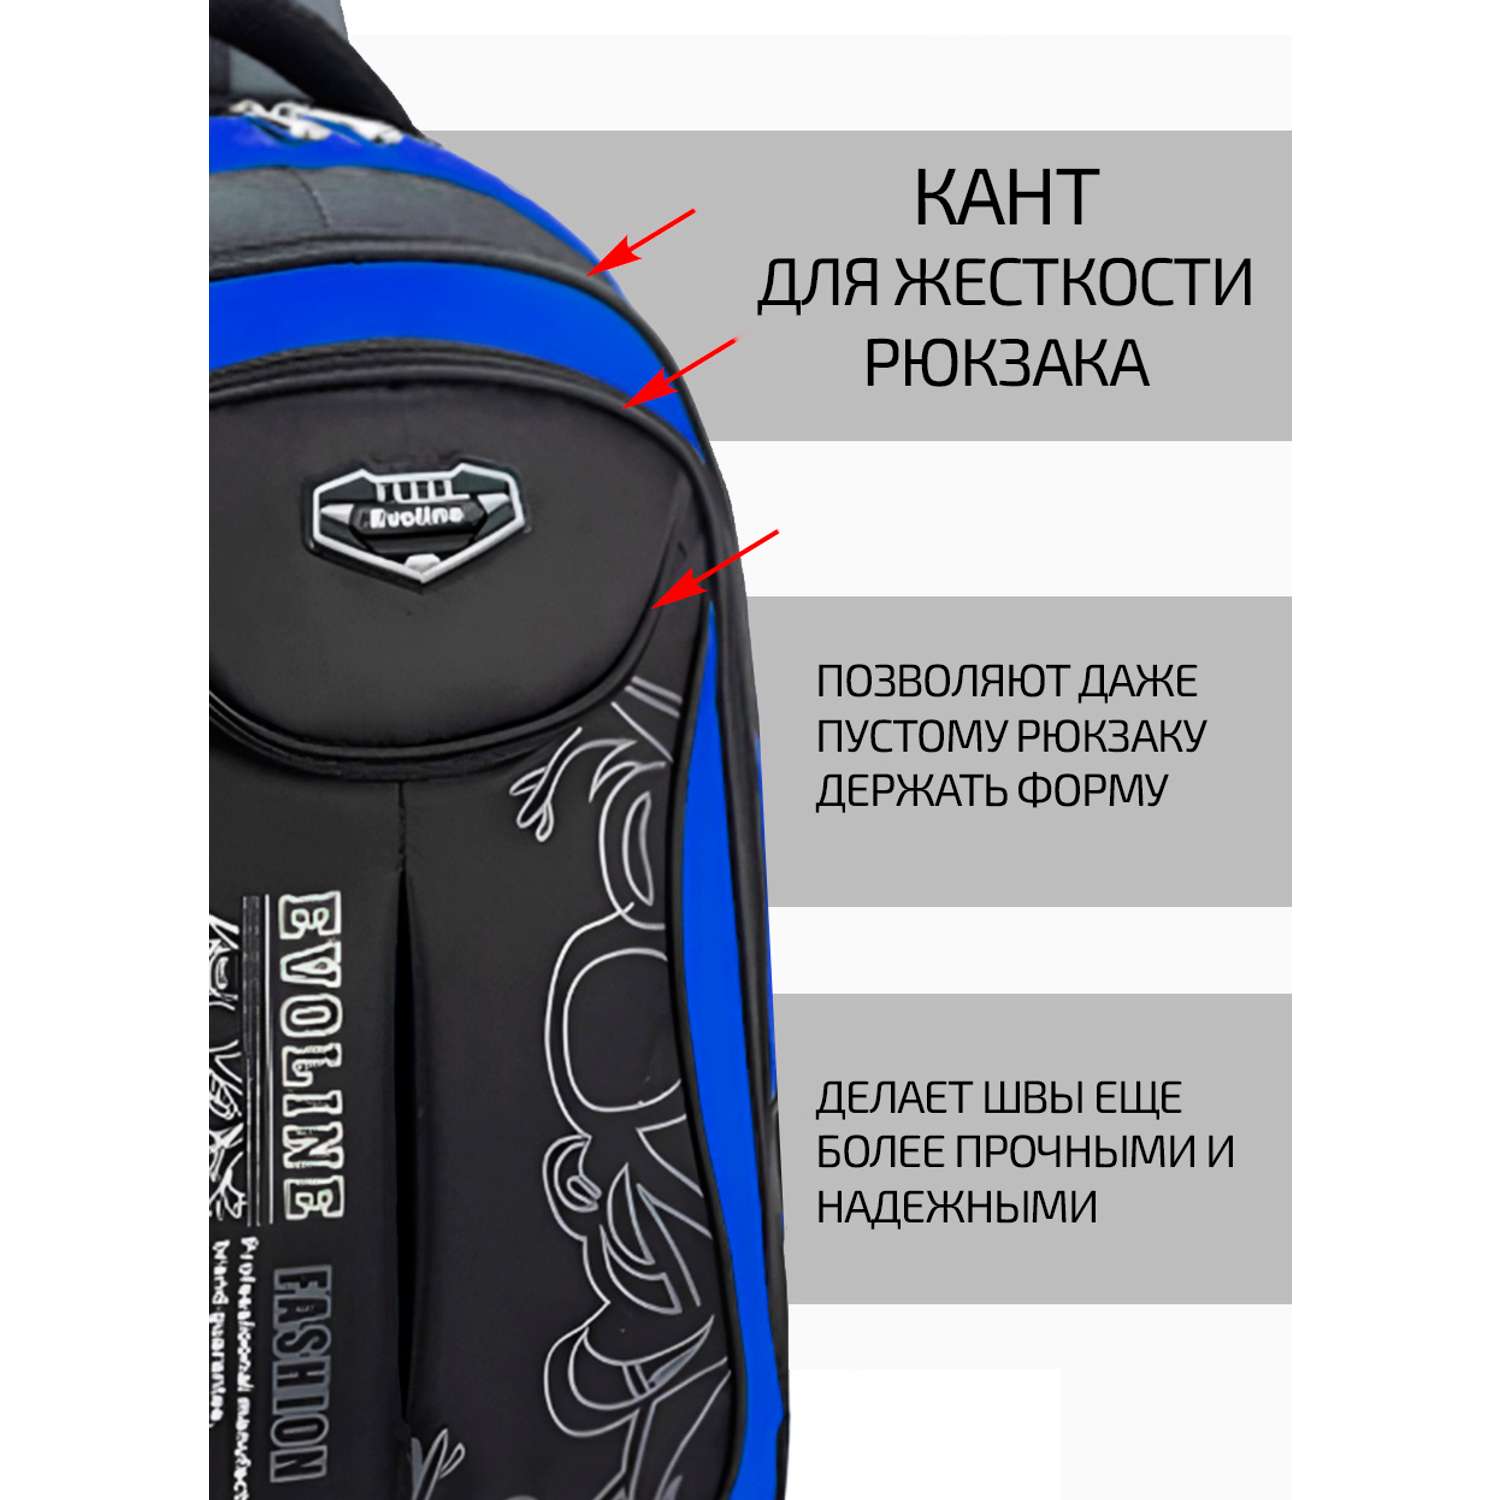 Рюкзак школьный Evoline средний черно-голубой EVO-158-1 - фото 5